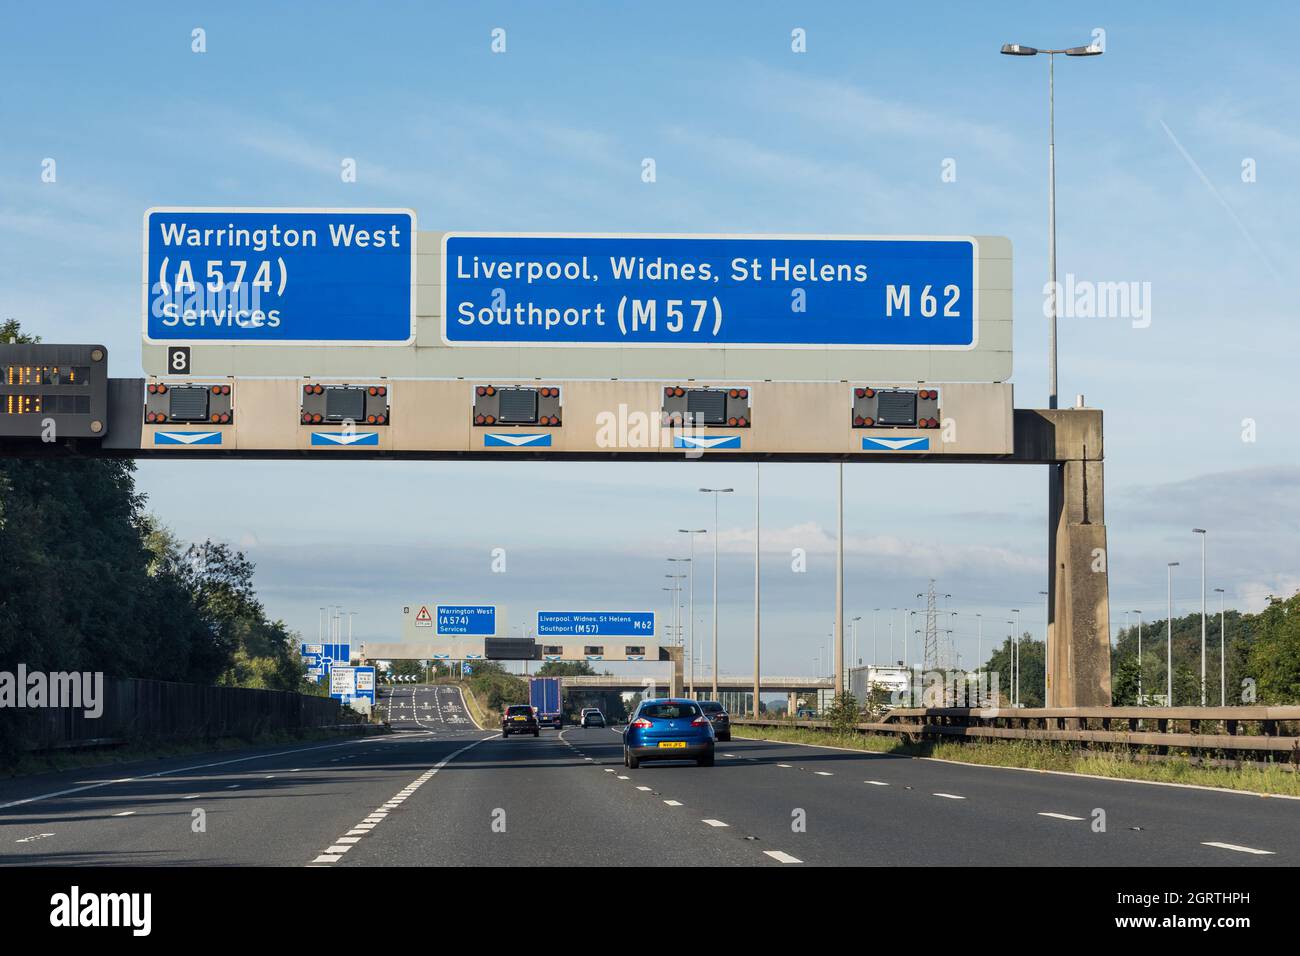 Britische Autobahn, Wegweiser in Richtung A 574 Warrington West und M62 Liverpool, Widnes, St Helens, Southport (M57) Stockfoto